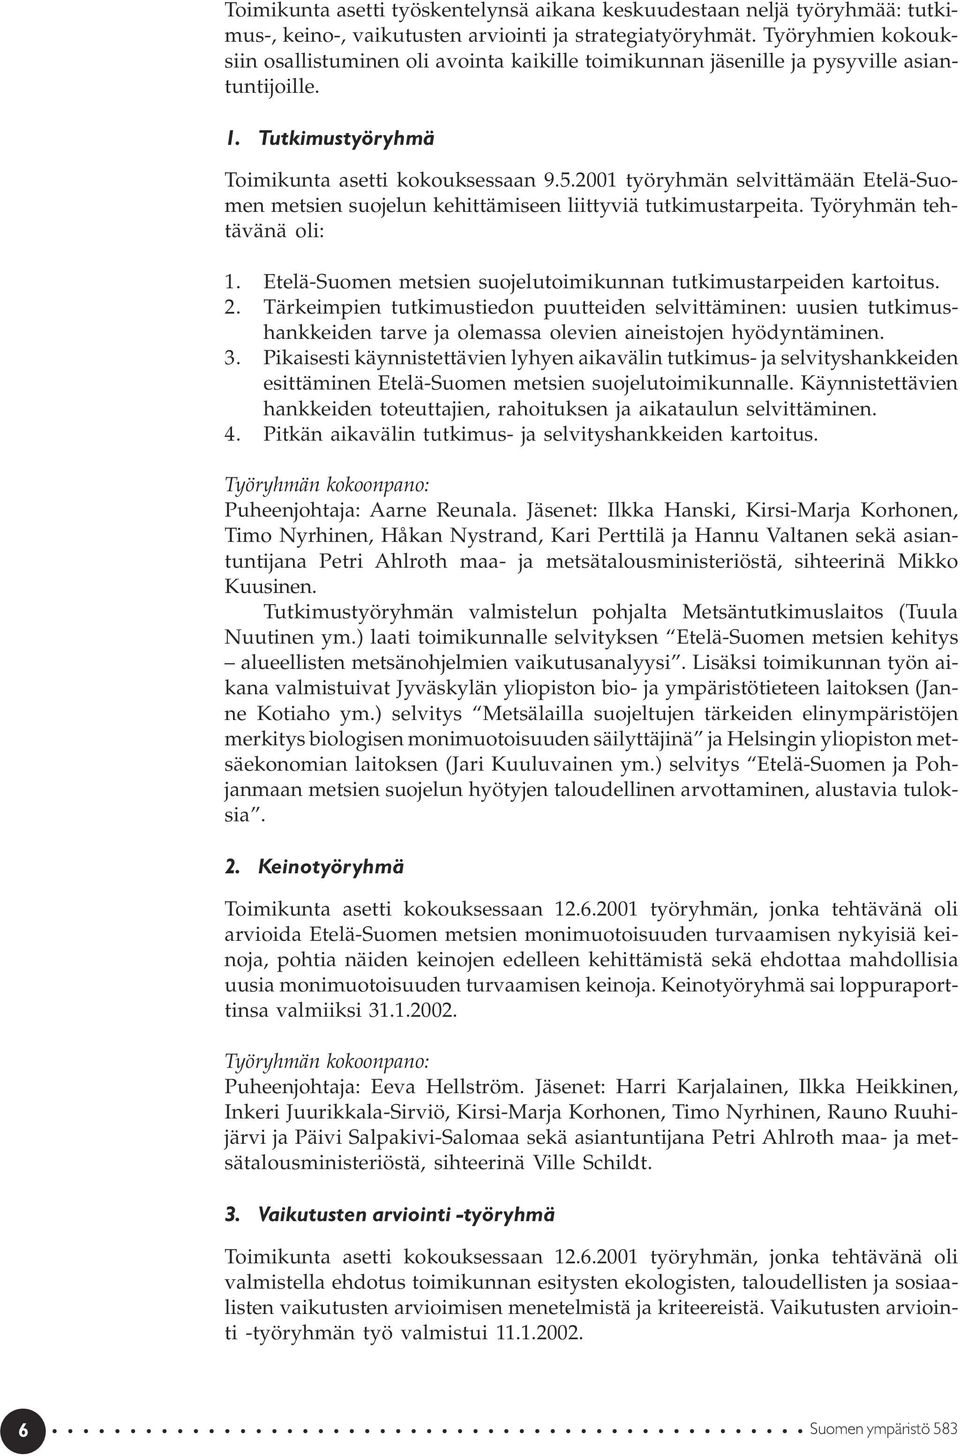 2001 työryhmän selvittämään Etelä-Suomen metsien suojelun kehittämiseen liittyviä tutkimustarpeita. Työryhmän tehtävänä oli: 1. Etelä-Suomen metsien suojelutoimikunnan tutkimustarpeiden kartoitus. 2.